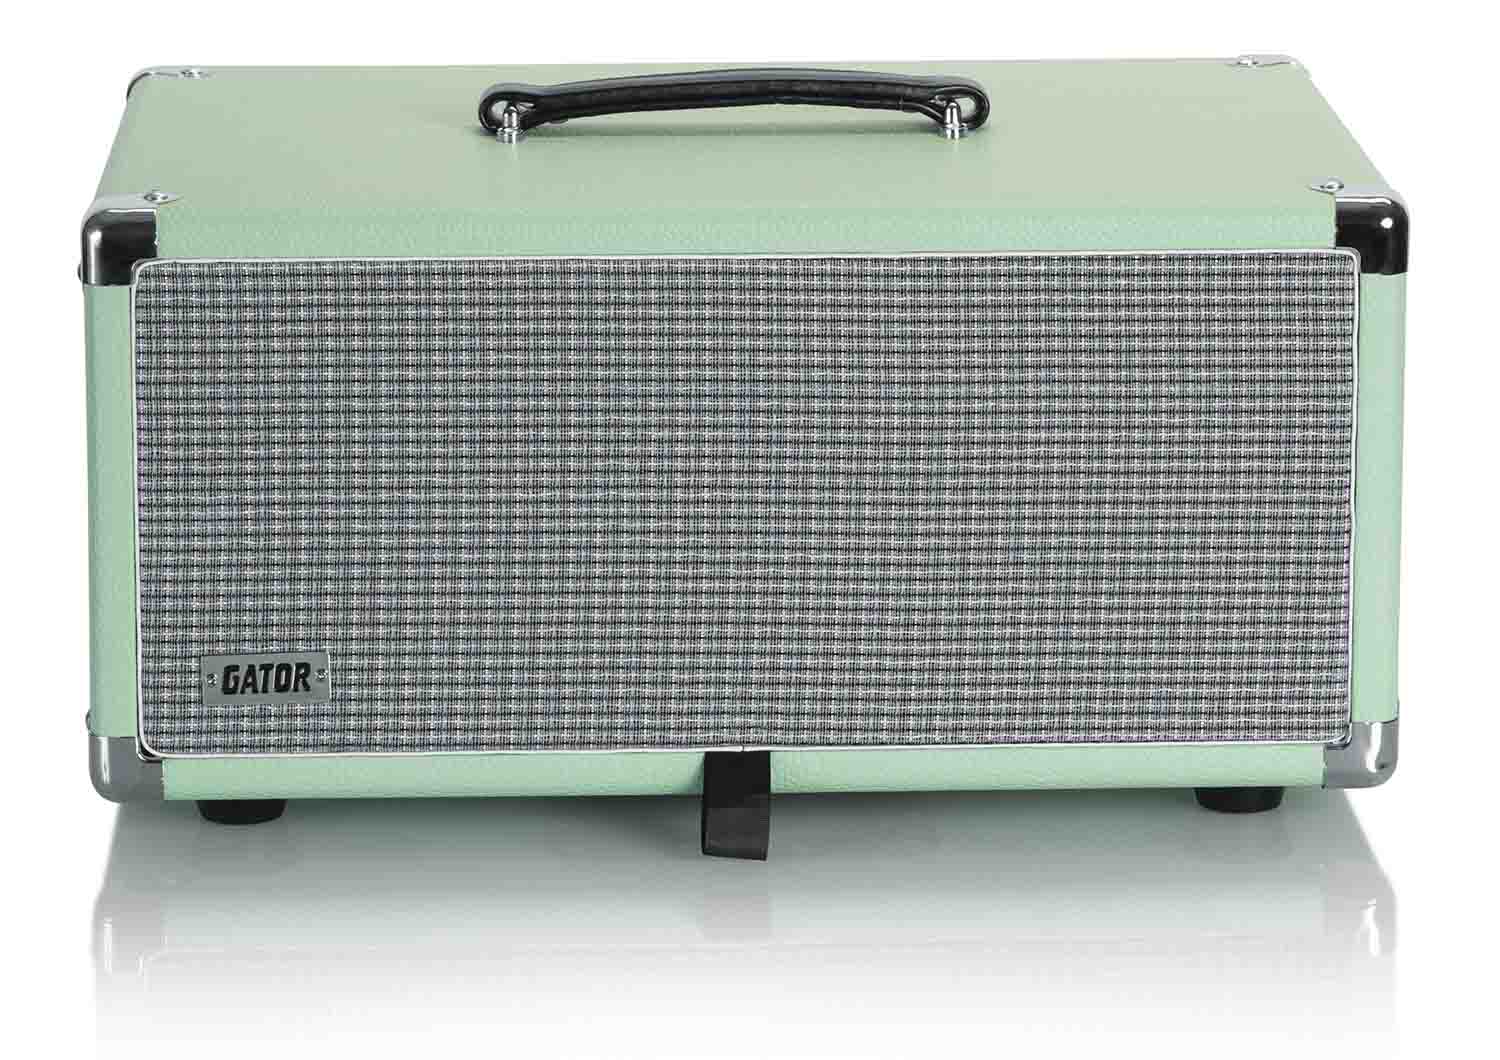 Gator Cases GR-RETRORACK-4SG Vintage Amp Vibe Rack Case - 4U Seafoam Green - Hollywood DJ